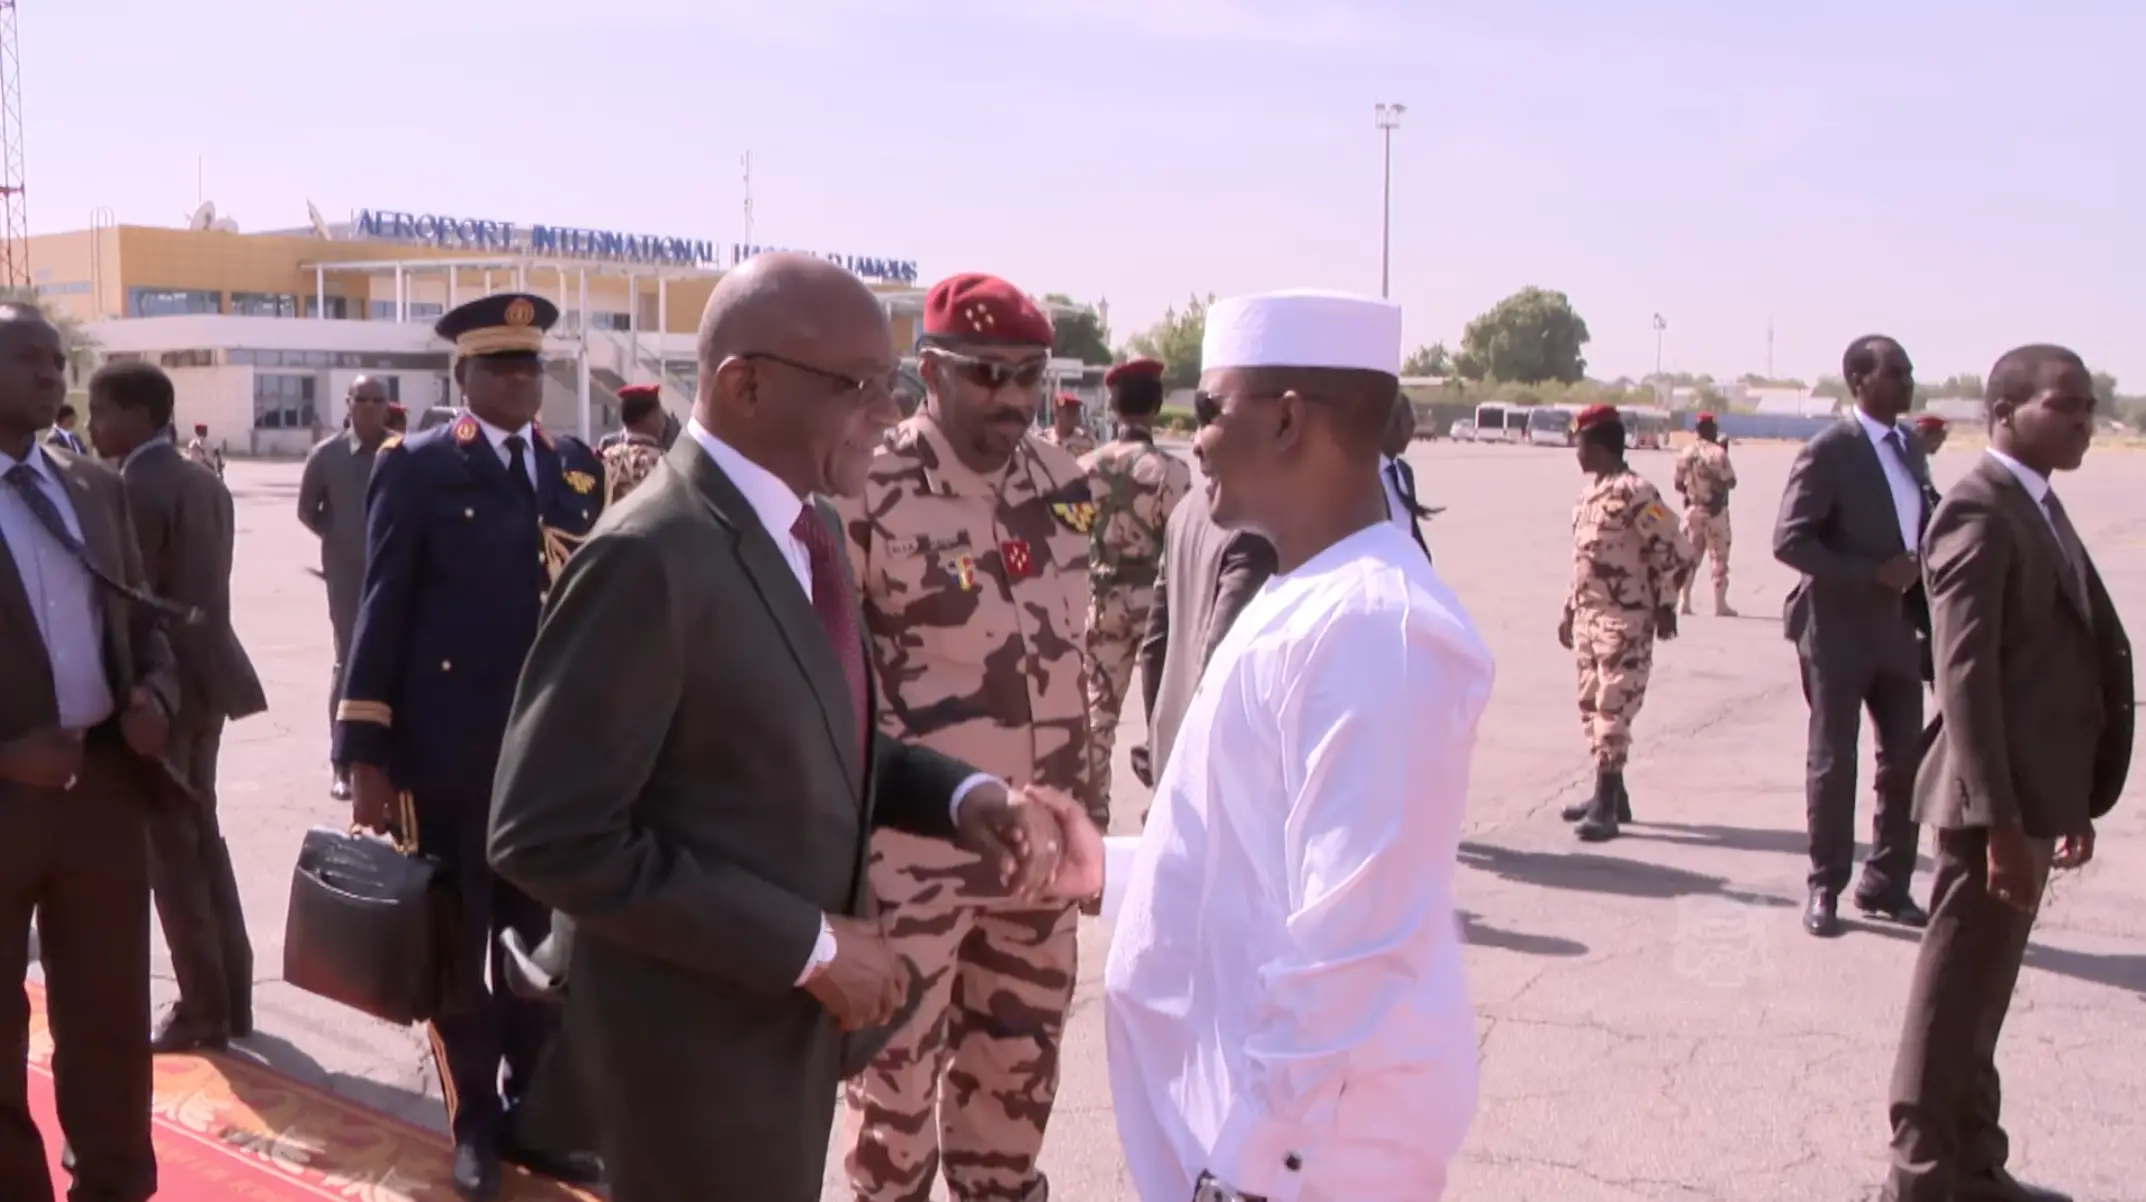 Le président de transition, le général Mahamat Idriss Deby, sur le tarmac de l'aéroport de N'Djamena, avec le premier ministre Saleh Kebzabo. © DGCOM/PR